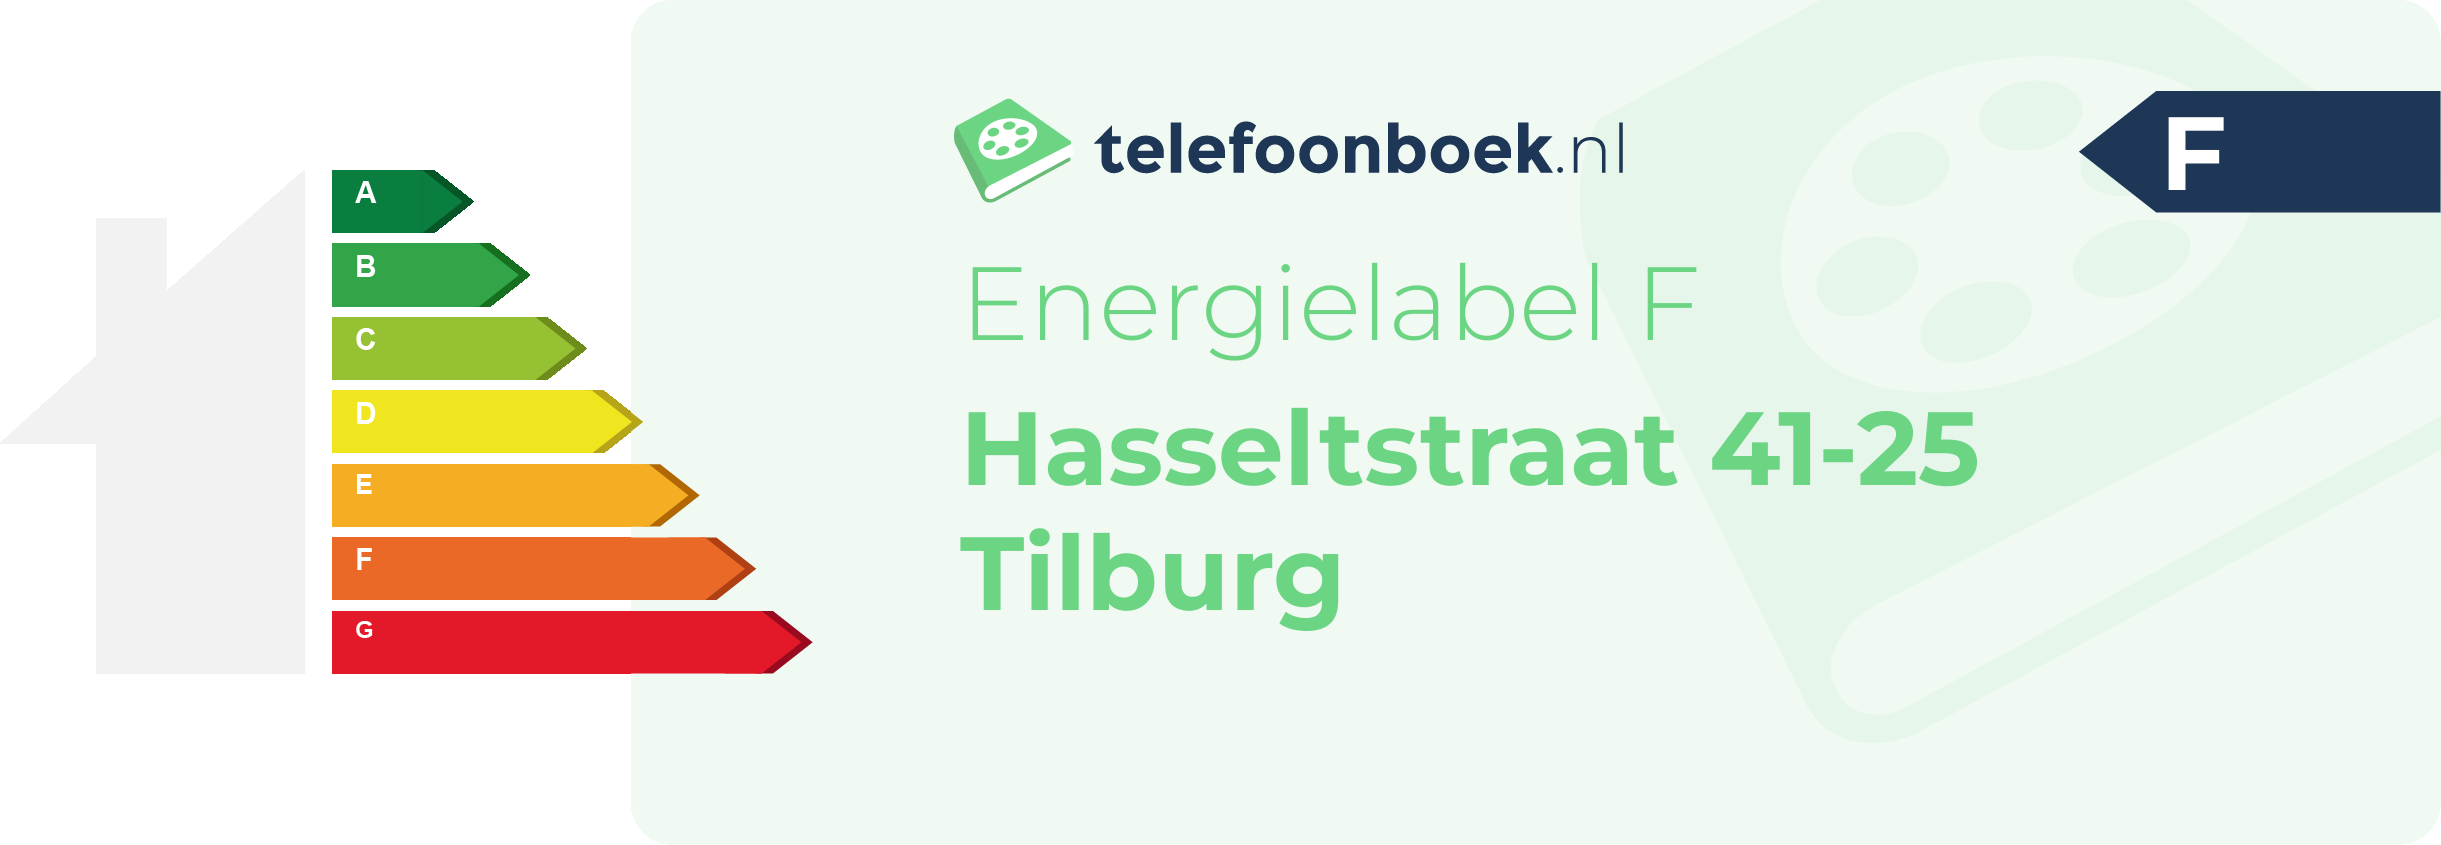 Energielabel Hasseltstraat 41-25 Tilburg